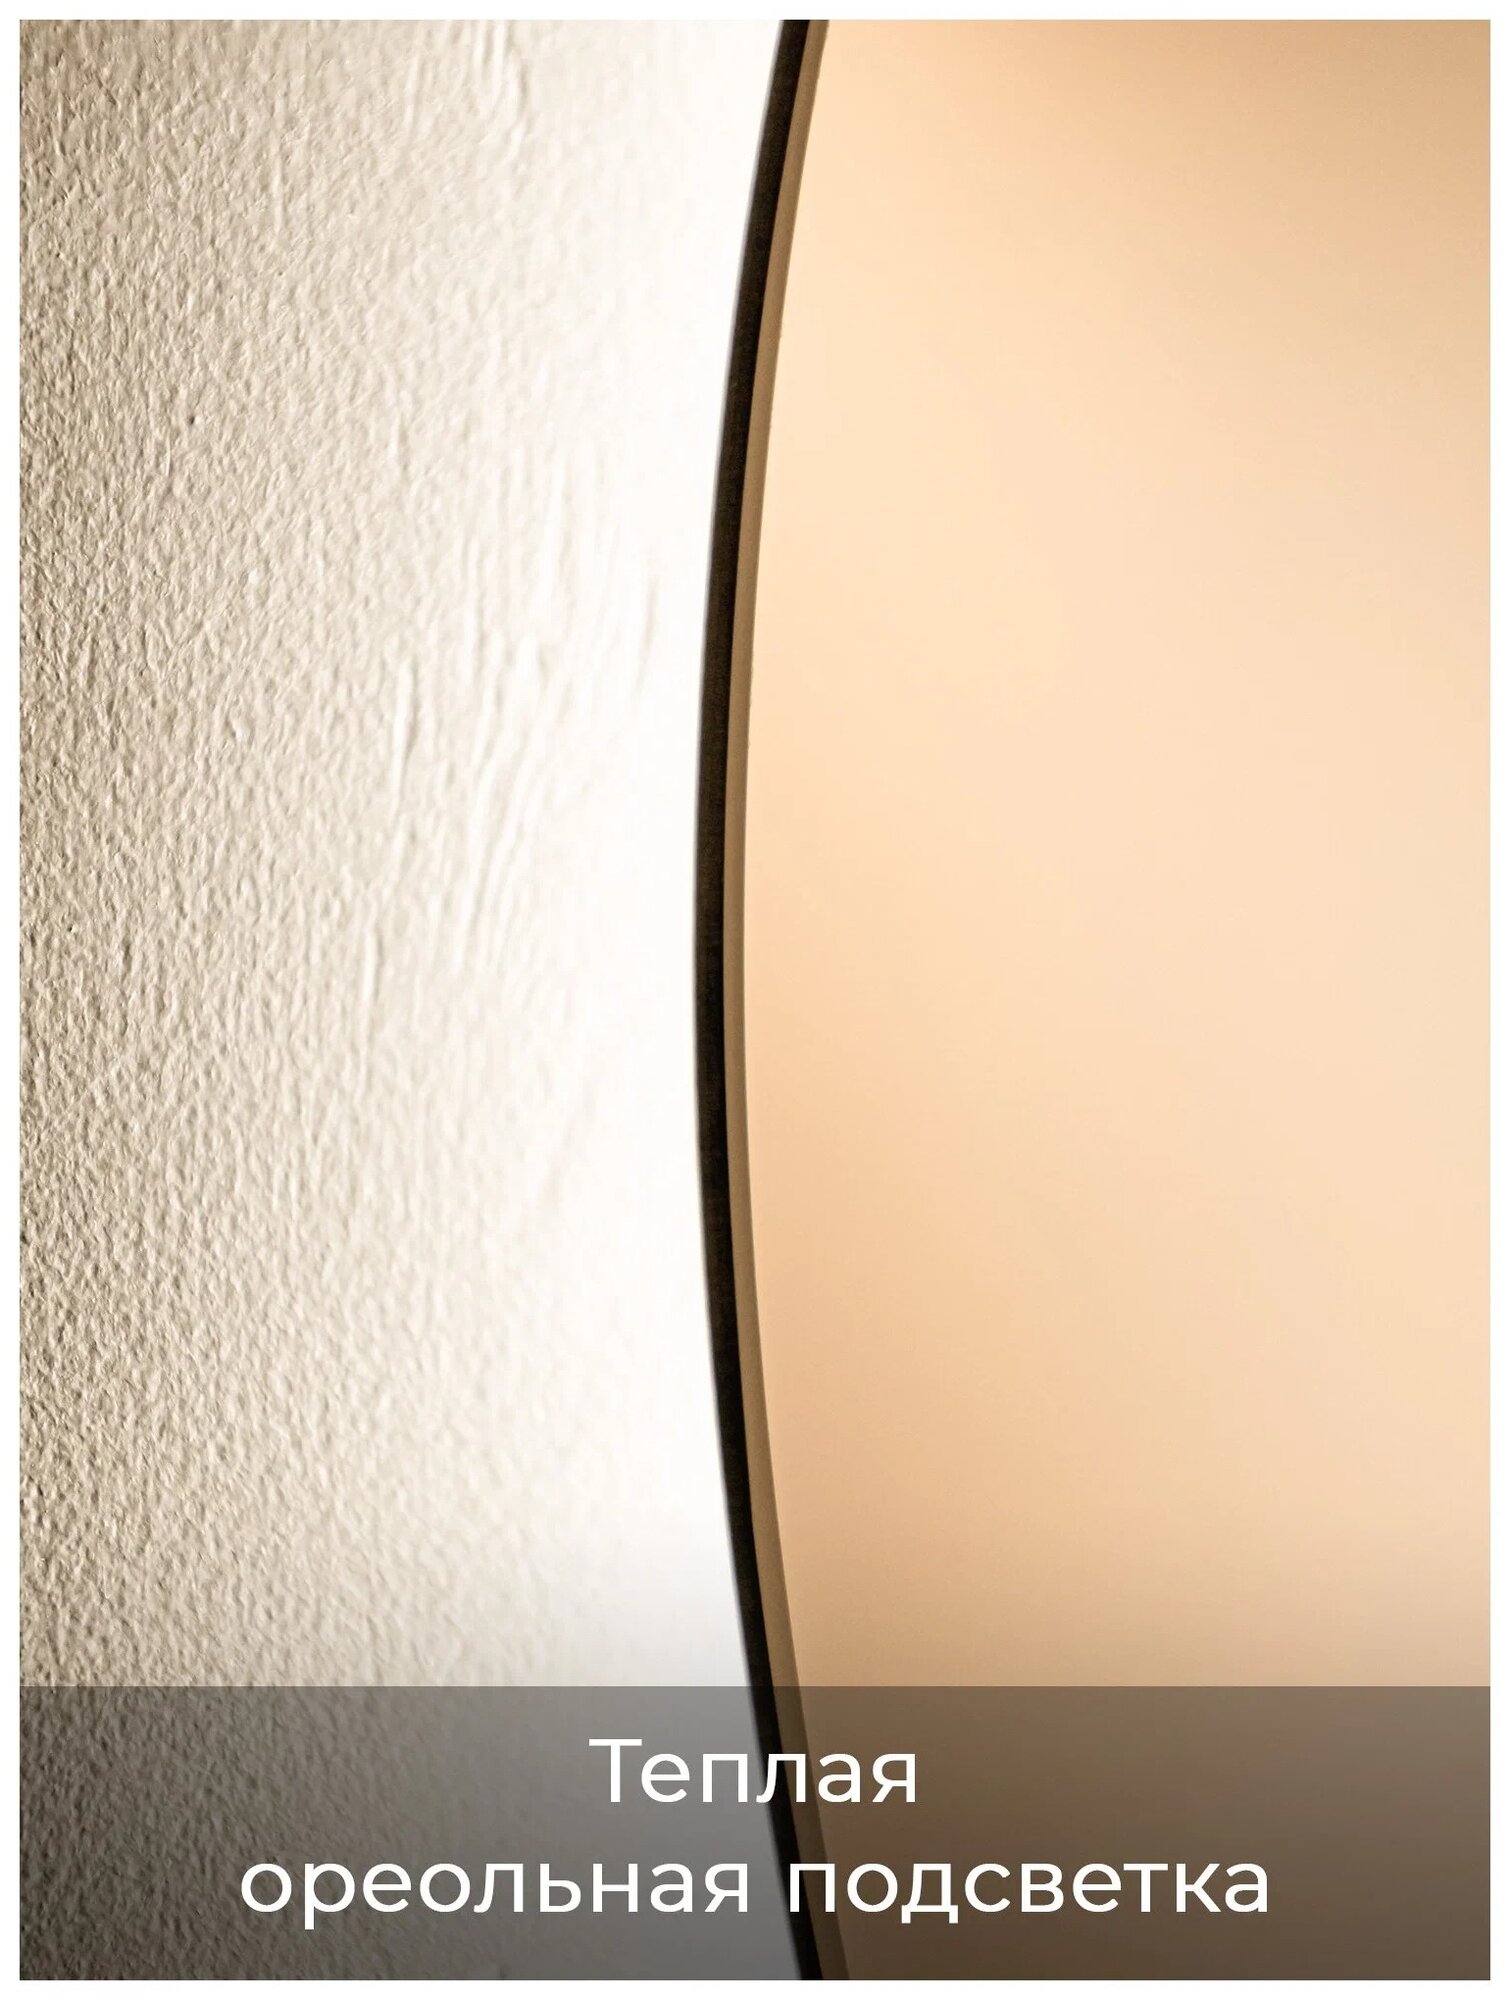 Зеркало в ванную Vollmond lite 50 см (теплый свет, круглое, ореольная подсветка, сенсорный выключатель, регулировка яркости) - фотография № 4